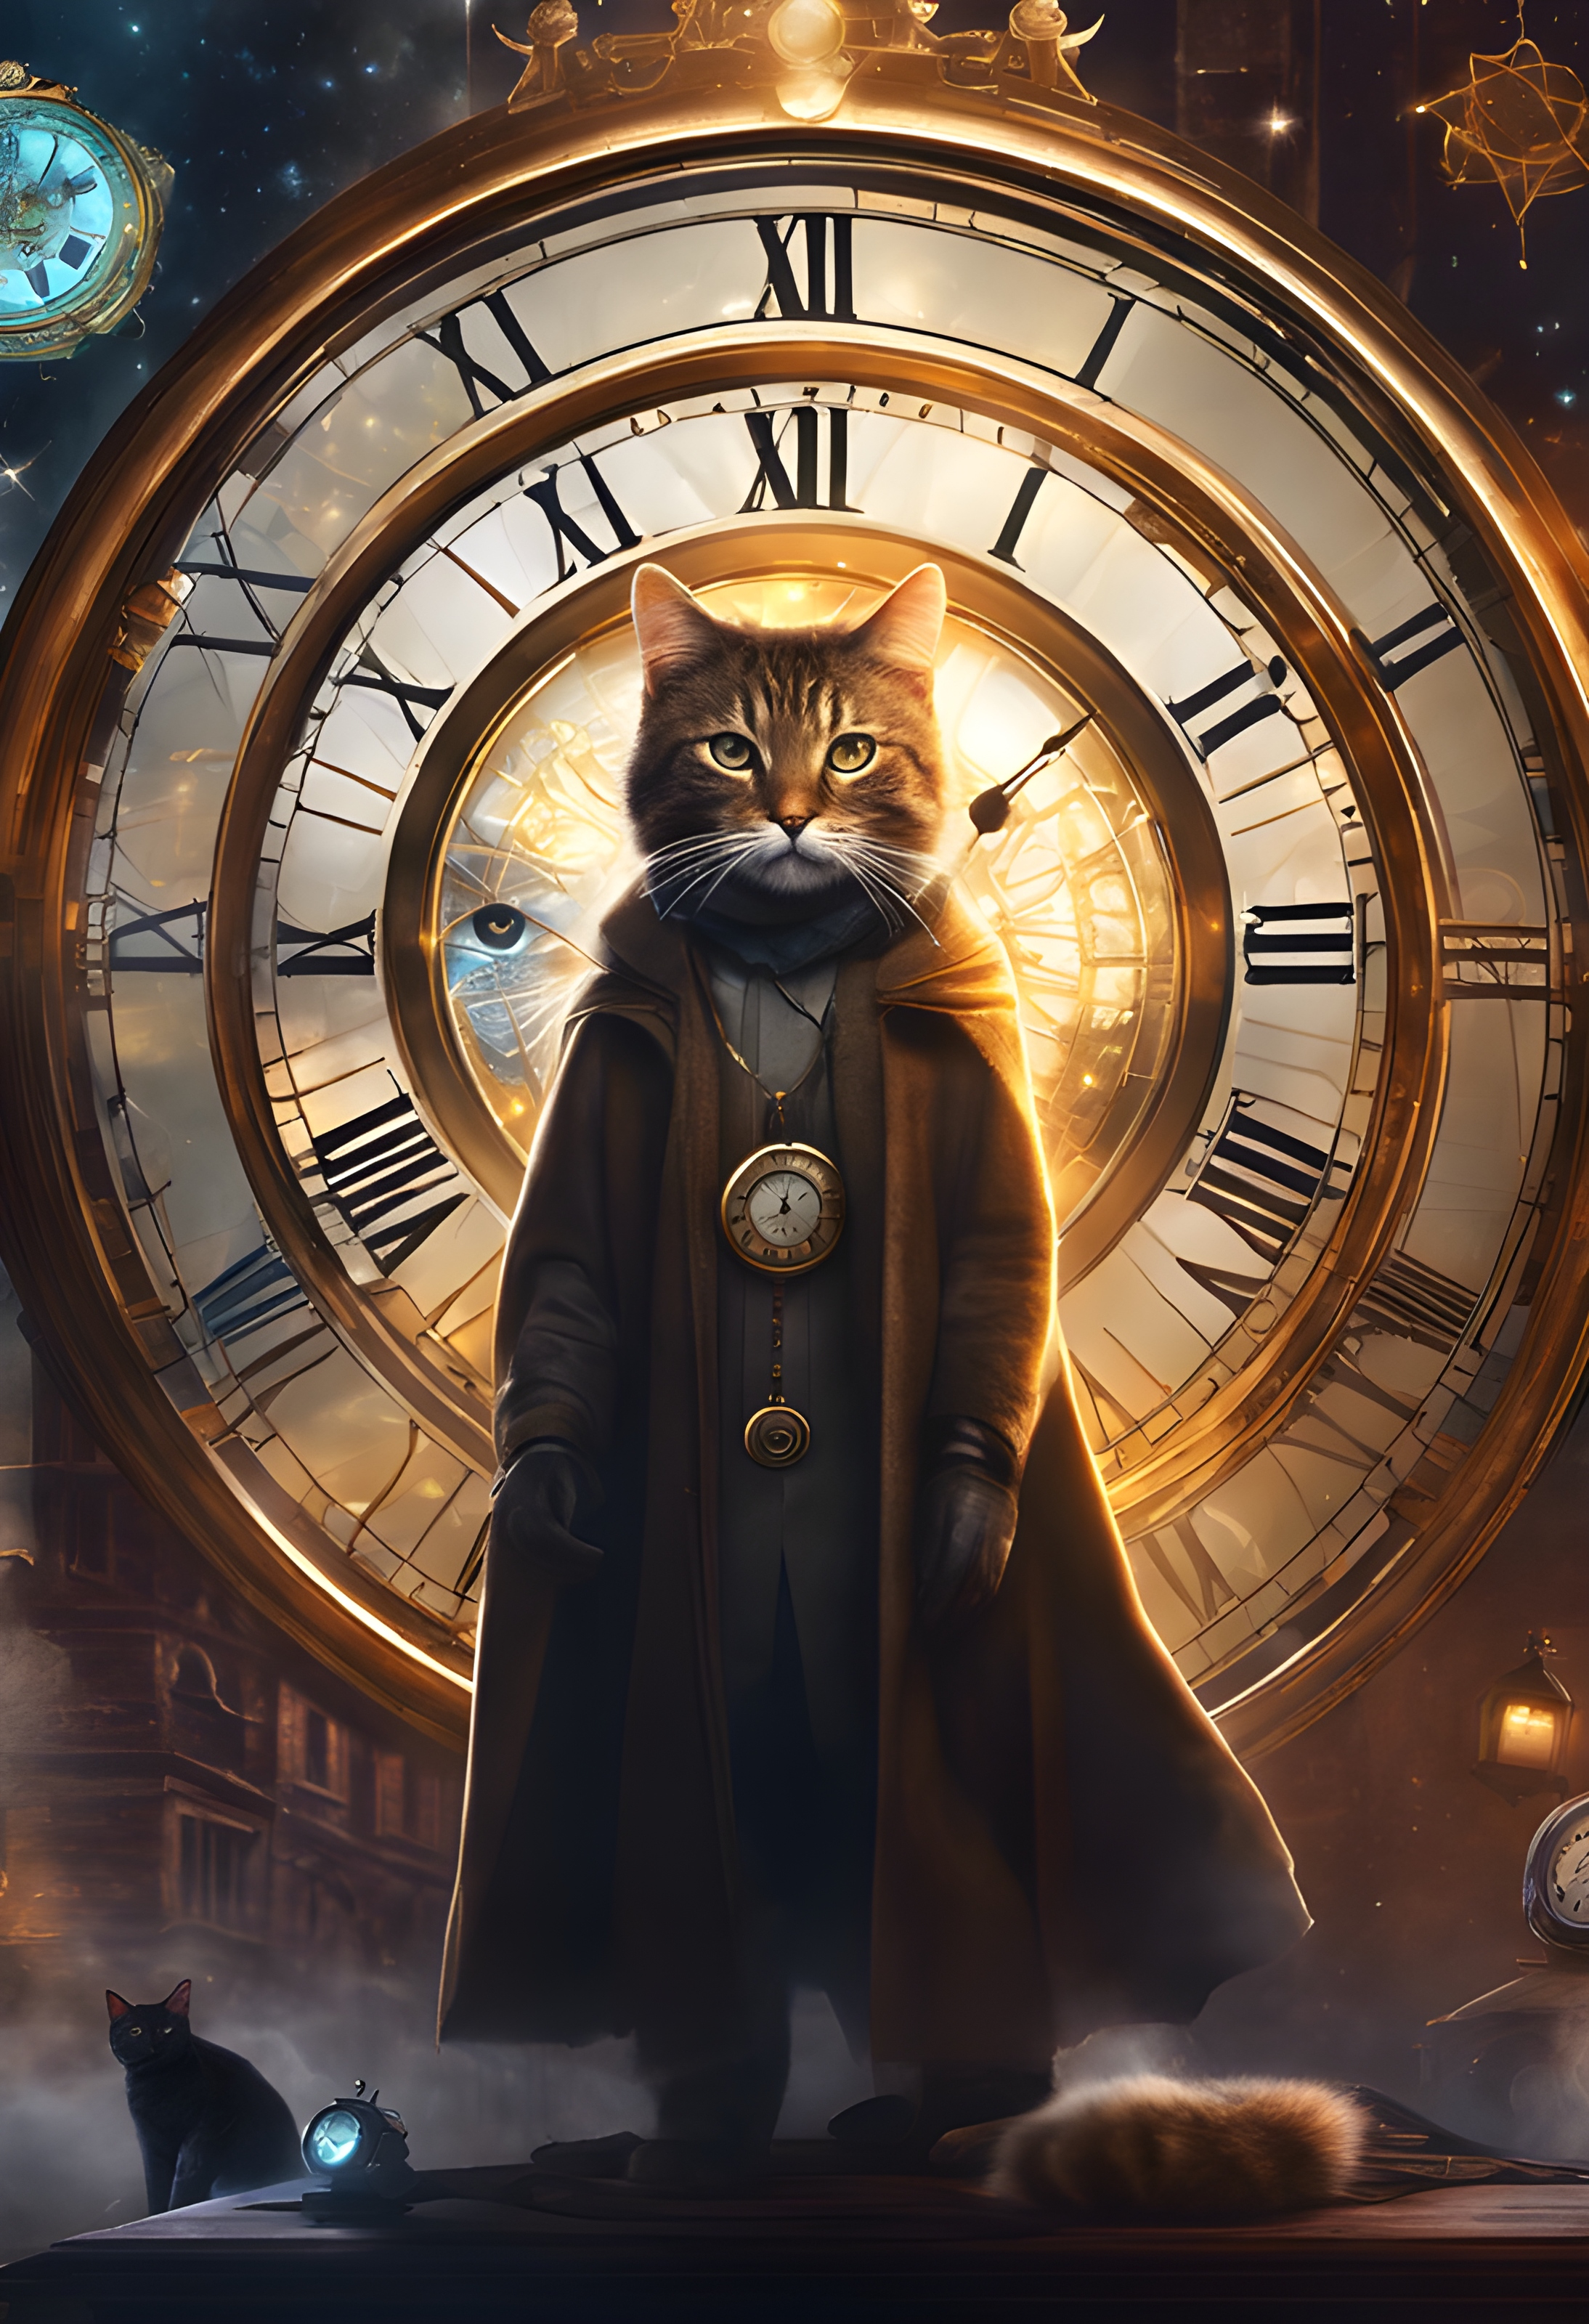 สร้างภาพ ภาพโปสเตอร์โฆษณาภาพยนตร์ มีกงล้อเวลา เวทย์มนต์ นาฬิกาโบราณ นาฬิกามากมายหลากหลายแบบ มีแมวยืนเหมือนมนุษย์ใส่ชุดคลุม แบบ doctor strange เป็นตัวเด่นของโปสเตอร์ เหนือจินตนาการ แฟนตาซี โปสเตอร์น่าดึงดูด สื่อถึงอารมณ์ของภาพยนตร์ สไตล์เดียวกับ doctor strange สมจริง